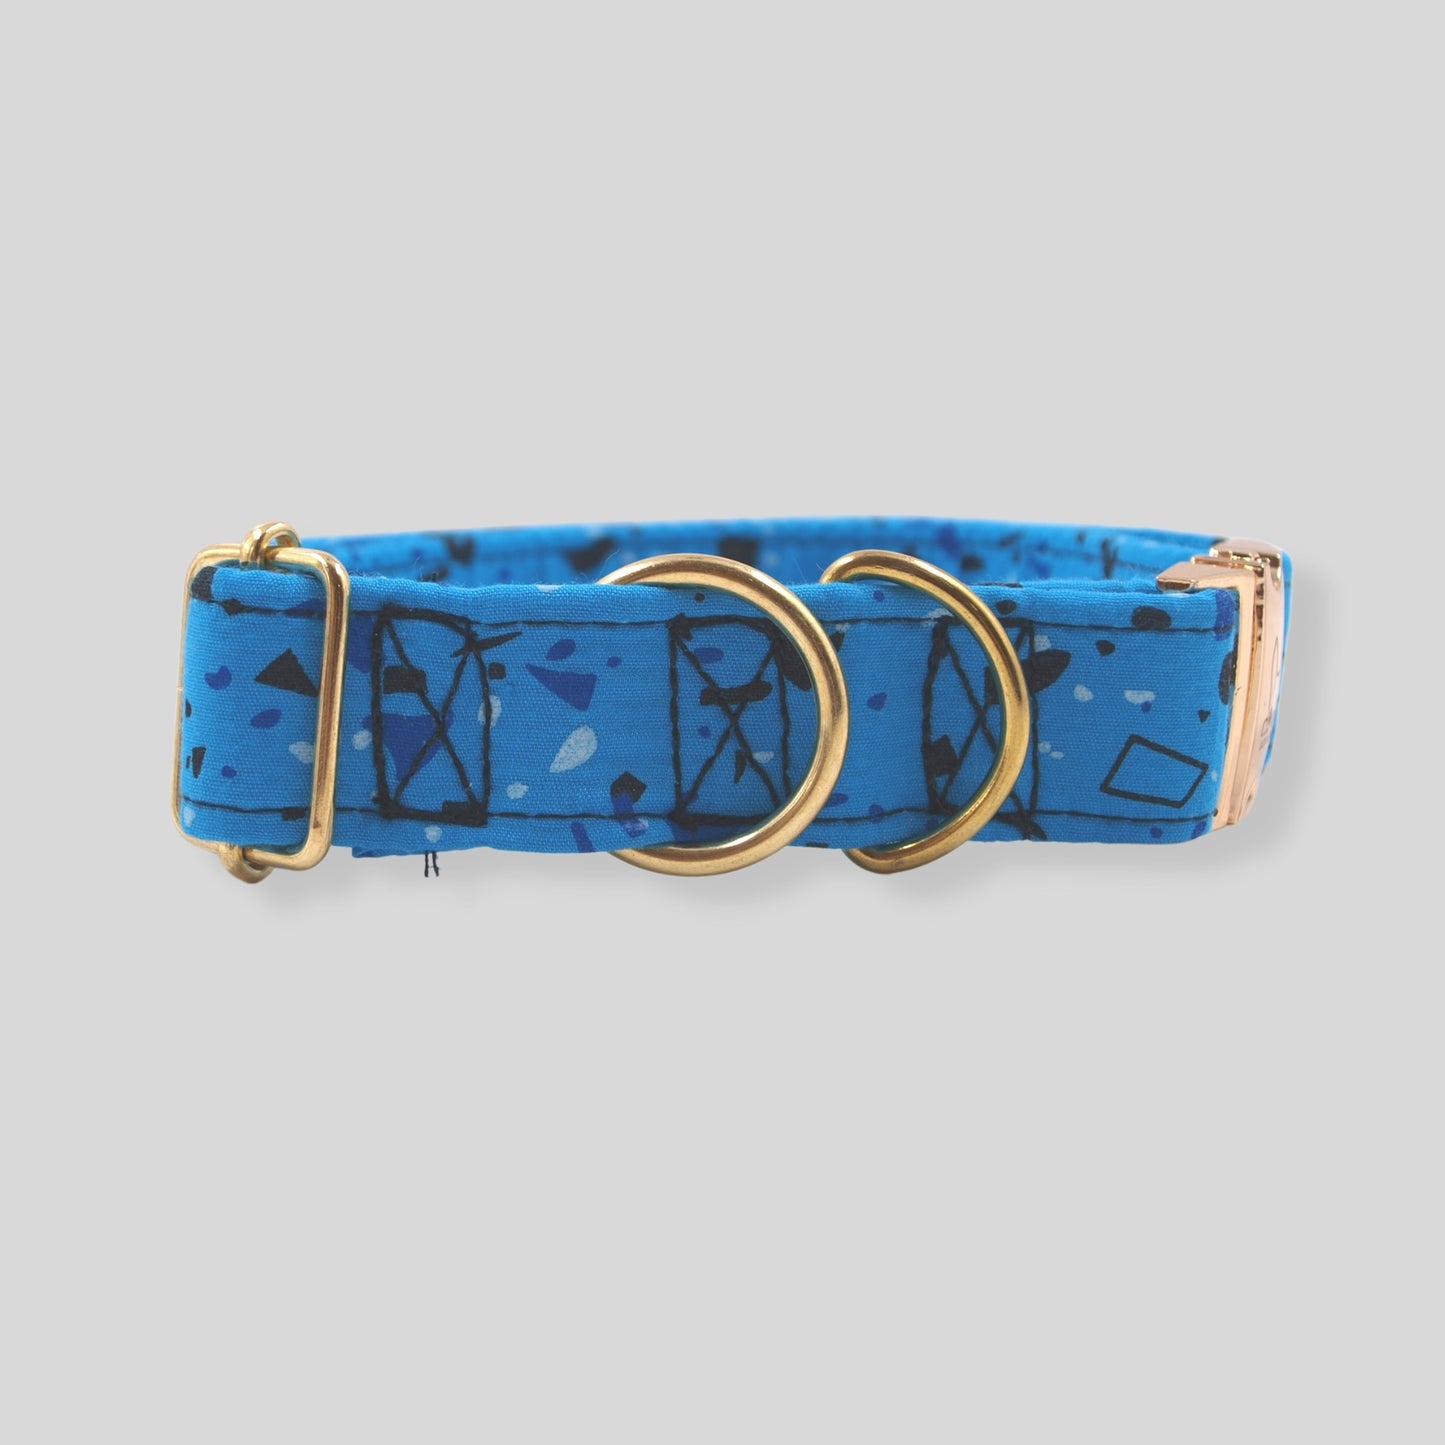 Collar para mascota con herrajes dorados, el collar es azul con formas geométricas en tonos azules.